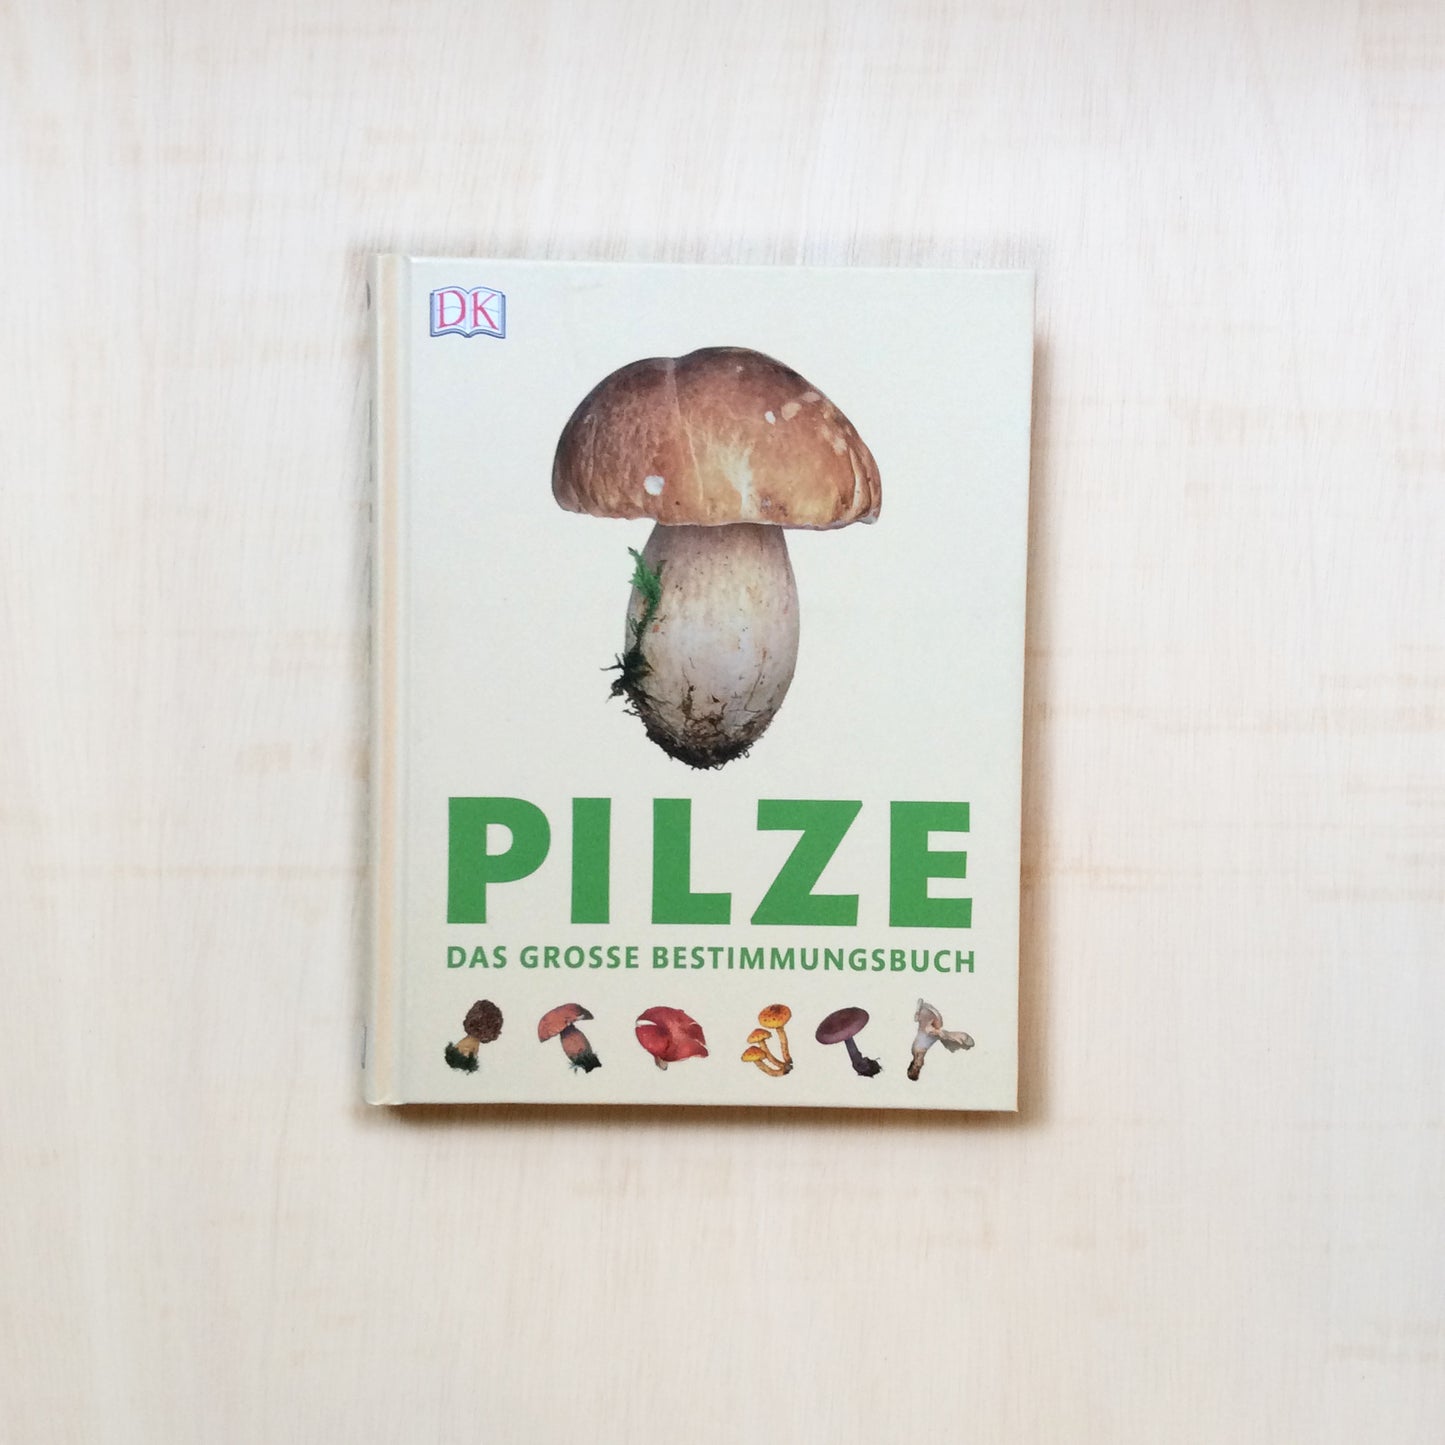 Pilze - Das grosse Bestimmungsbuch